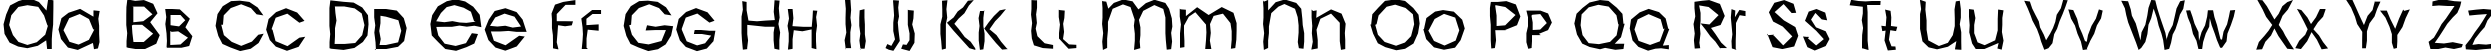 Пример написания английского алфавита шрифтом a_AvanteCpsLCBrk Light